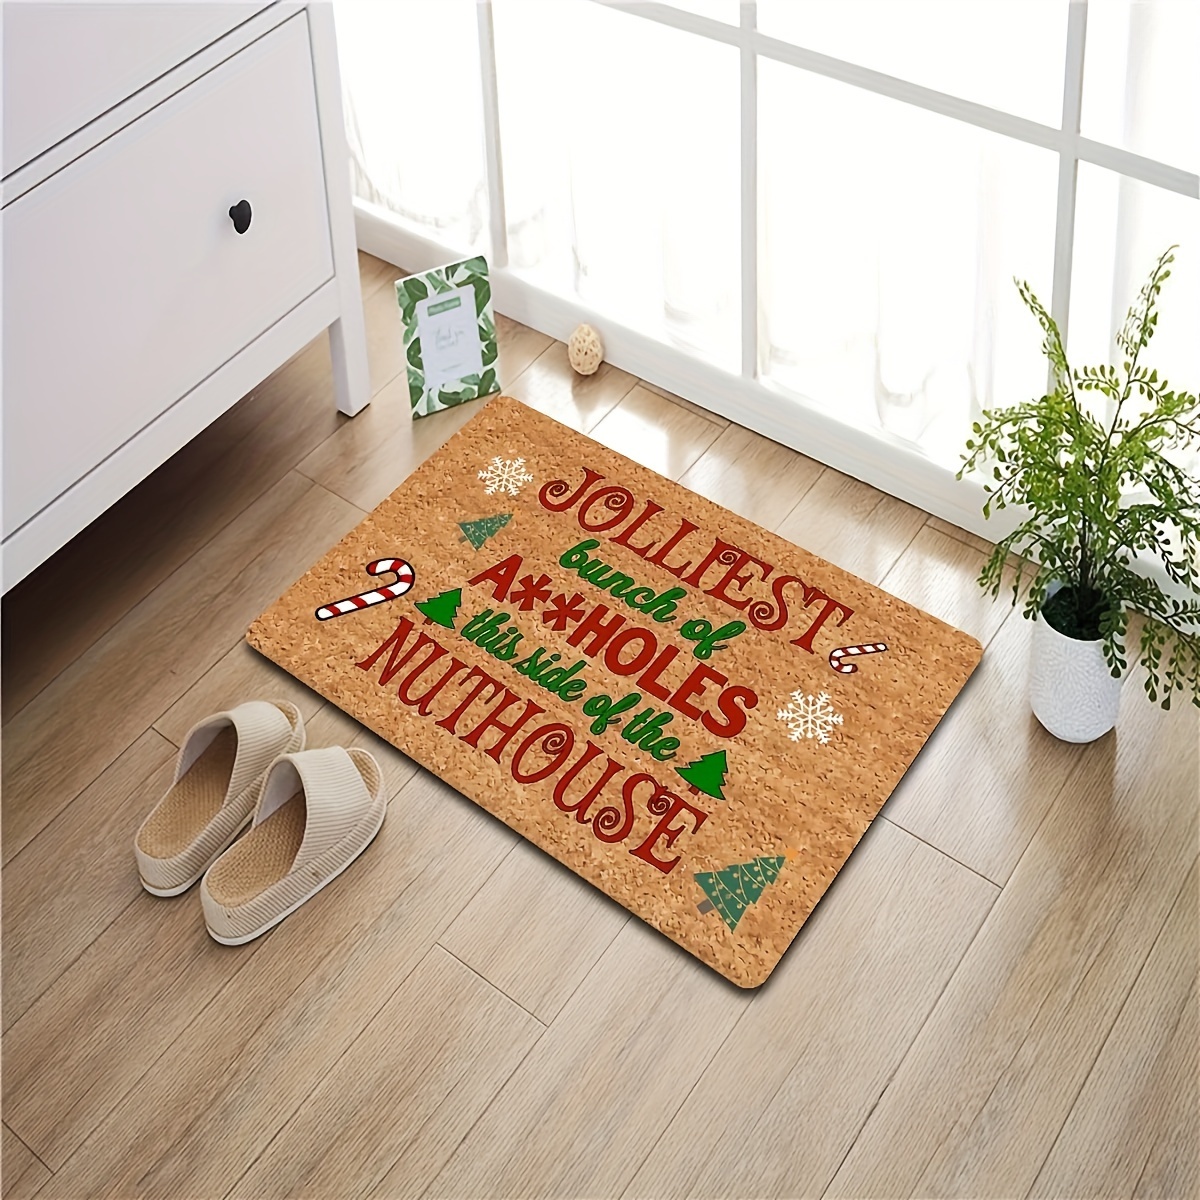 JPLZi Funny Doormat Funny Welcome Mat Please Leave Doormat Gift Doormats  For Gift For New Home